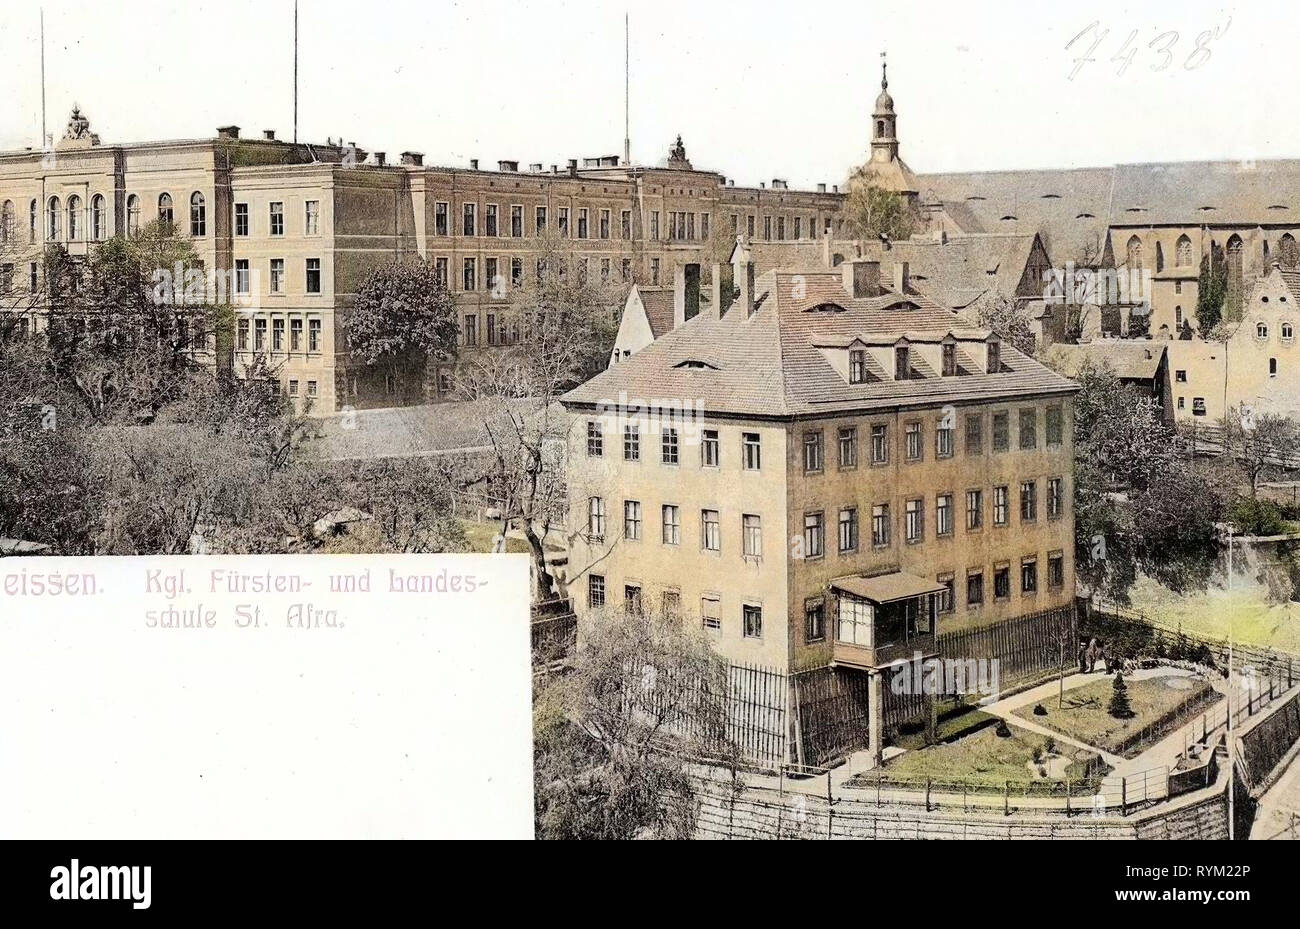 Sächsisches Landesgymnasium Sankt Afra, 1906, Meißen, Königliche Fürsten, und Landesschule St. Afra, Germany Stock Photo